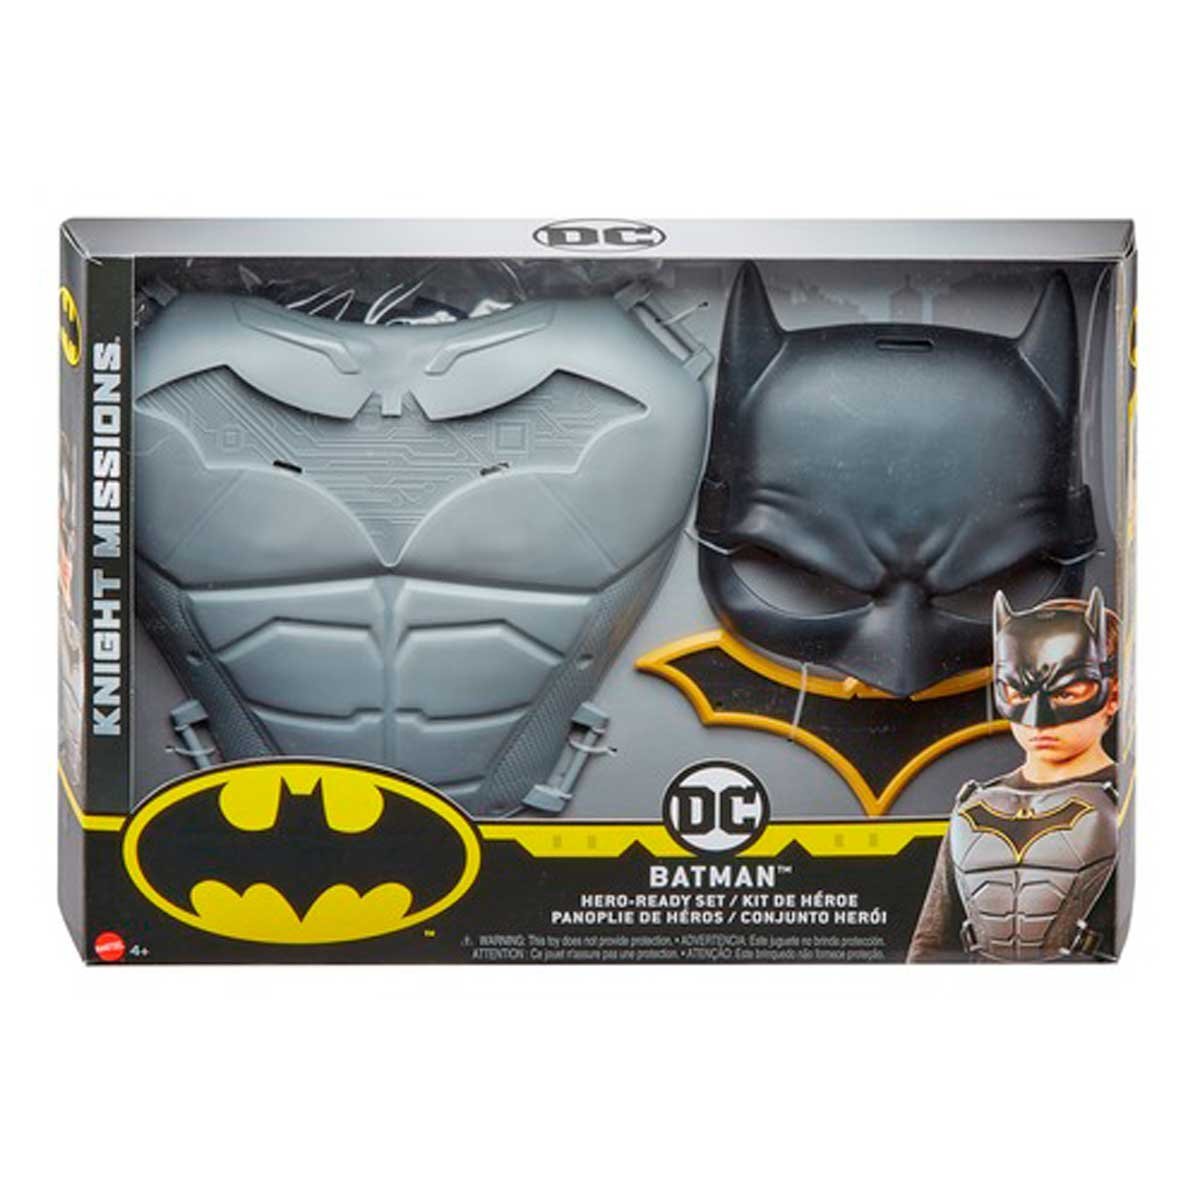 Batman Missions Armadura + Mascara  Mattel